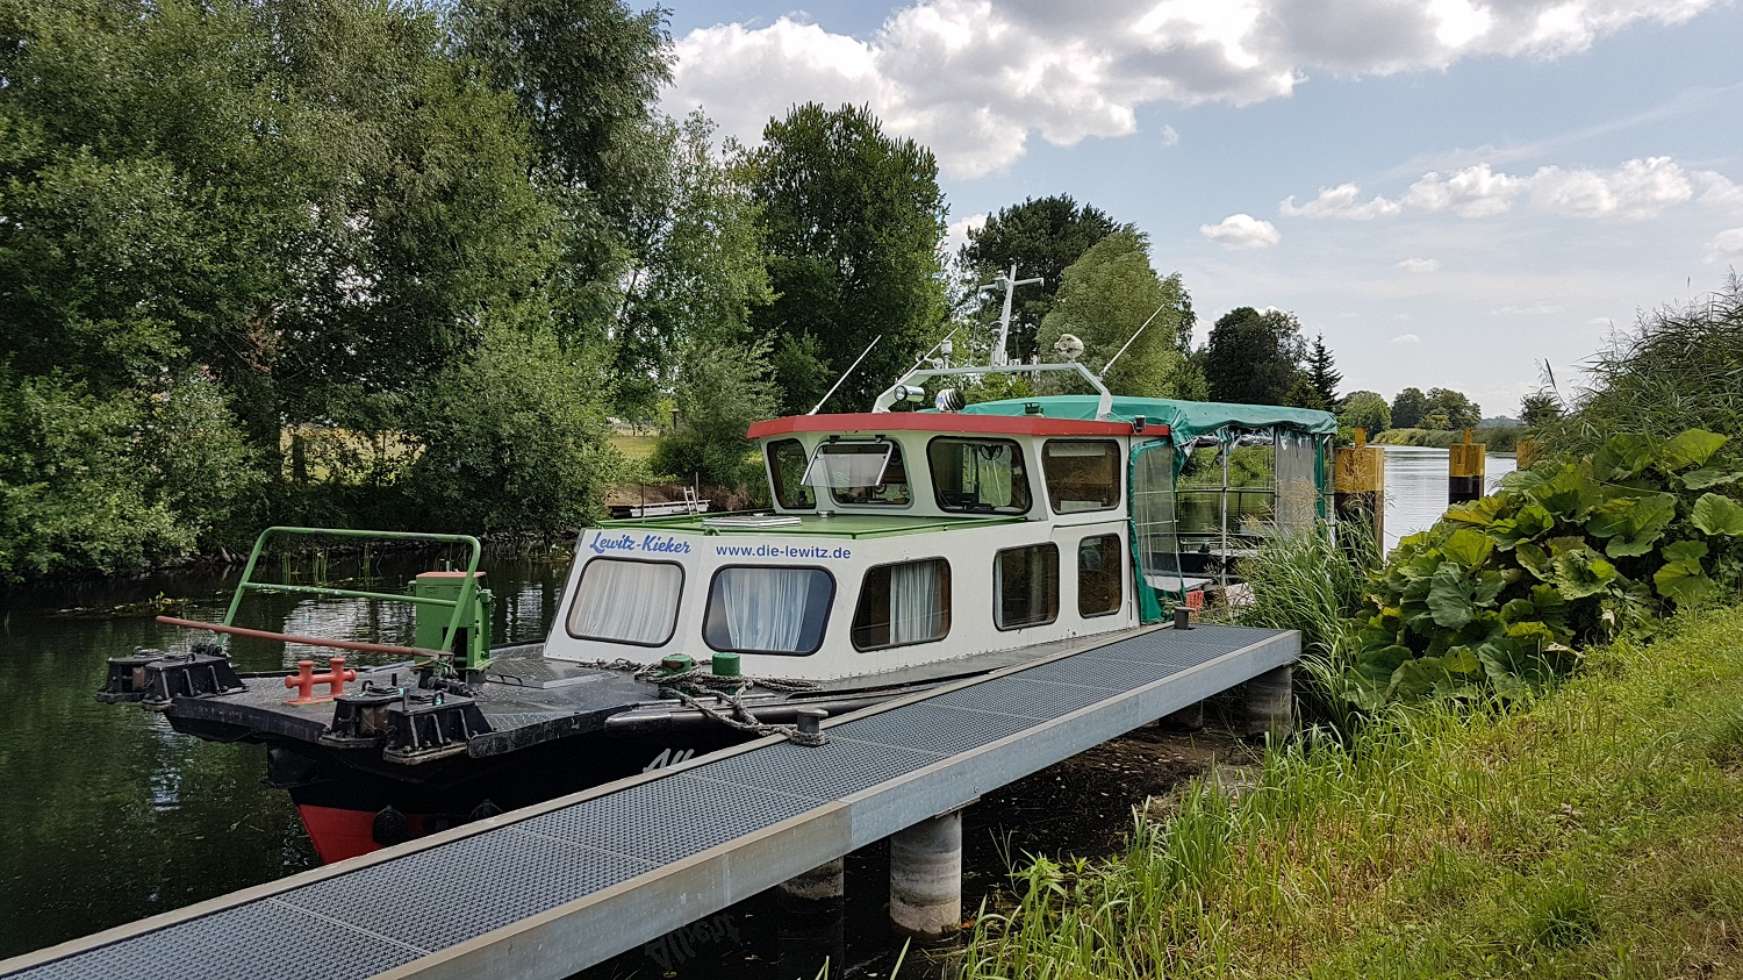 Lewitz-Kieker Albert startet ab Heimathafen Plate zu geführten Bootstouren auf dem Störkanal Richtung Schweriner See oder Waldlewitz, Lewitzer Fischteiche, Neustadt-Glewe.